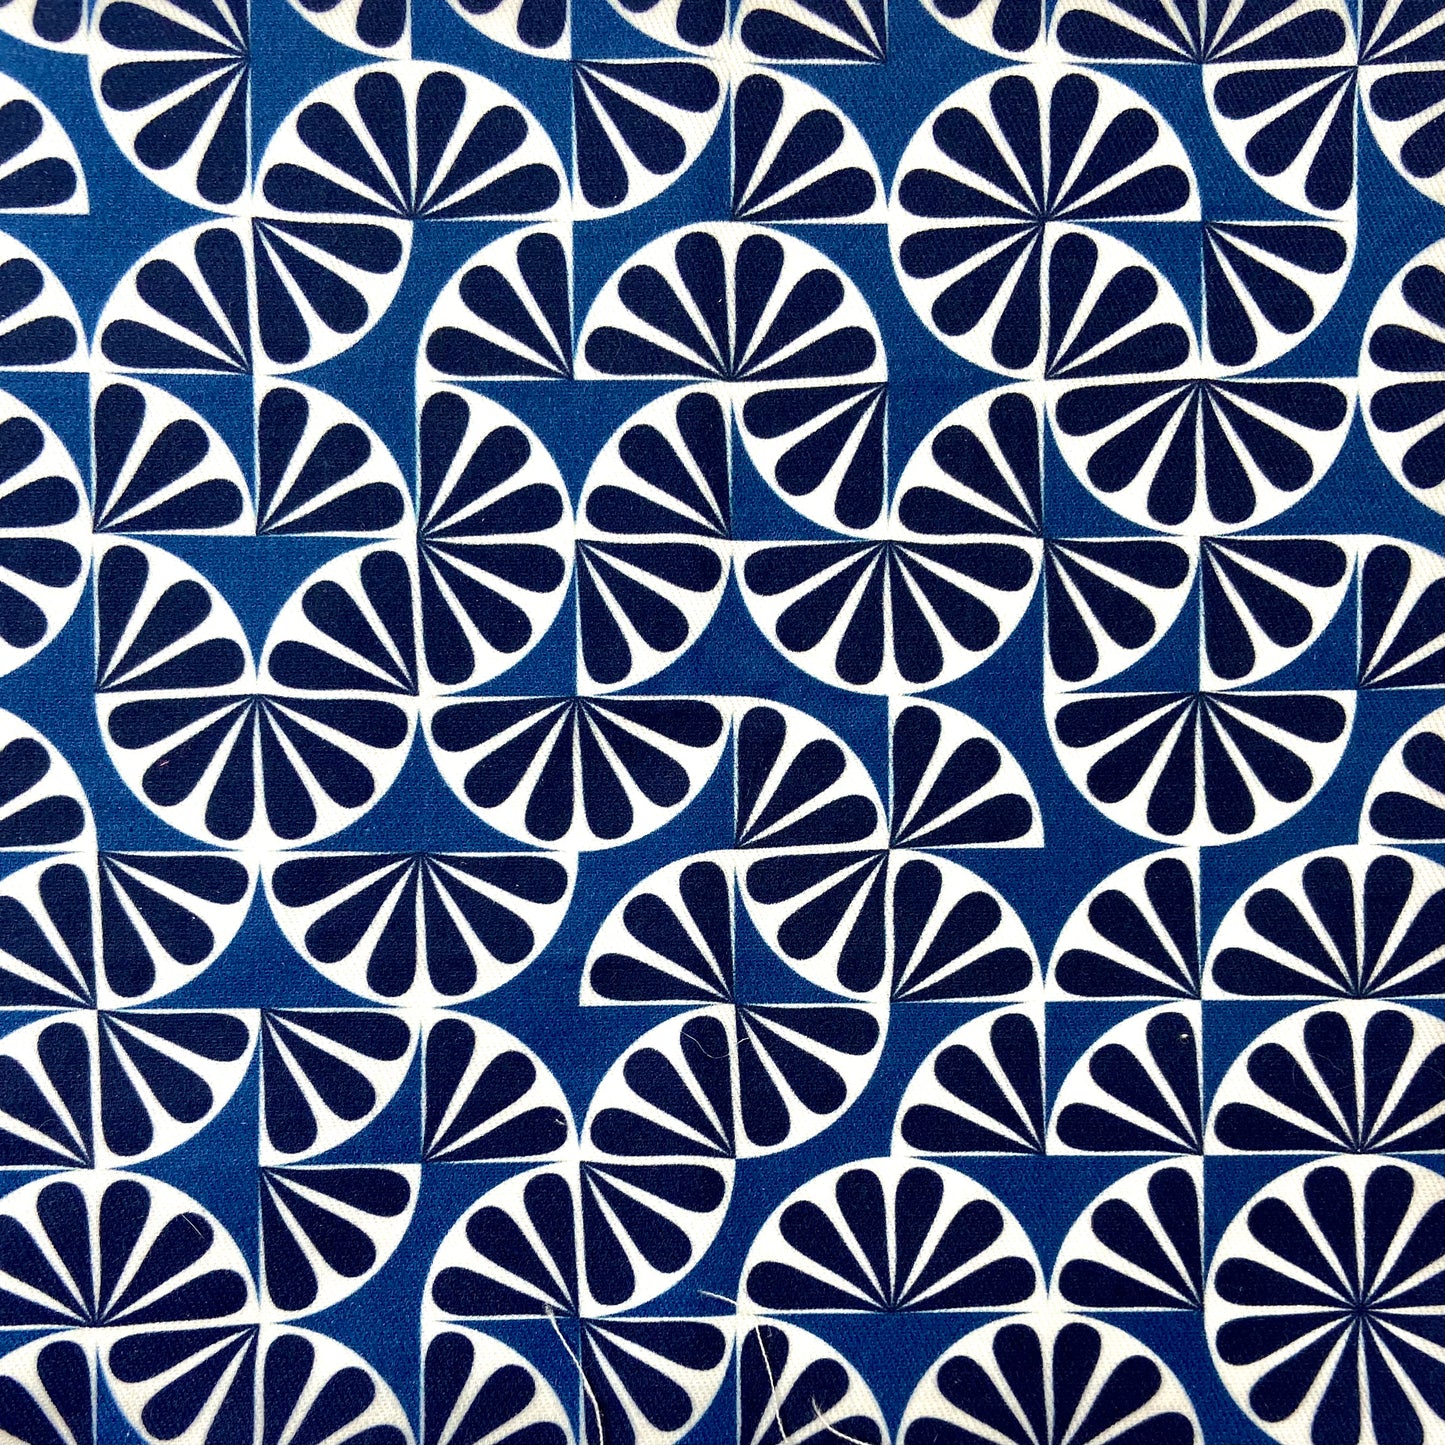 Sergé de coton imprimé motif French Riviera éventail marine et blanc sur fond bleu indigo motif vintage rétro années 60